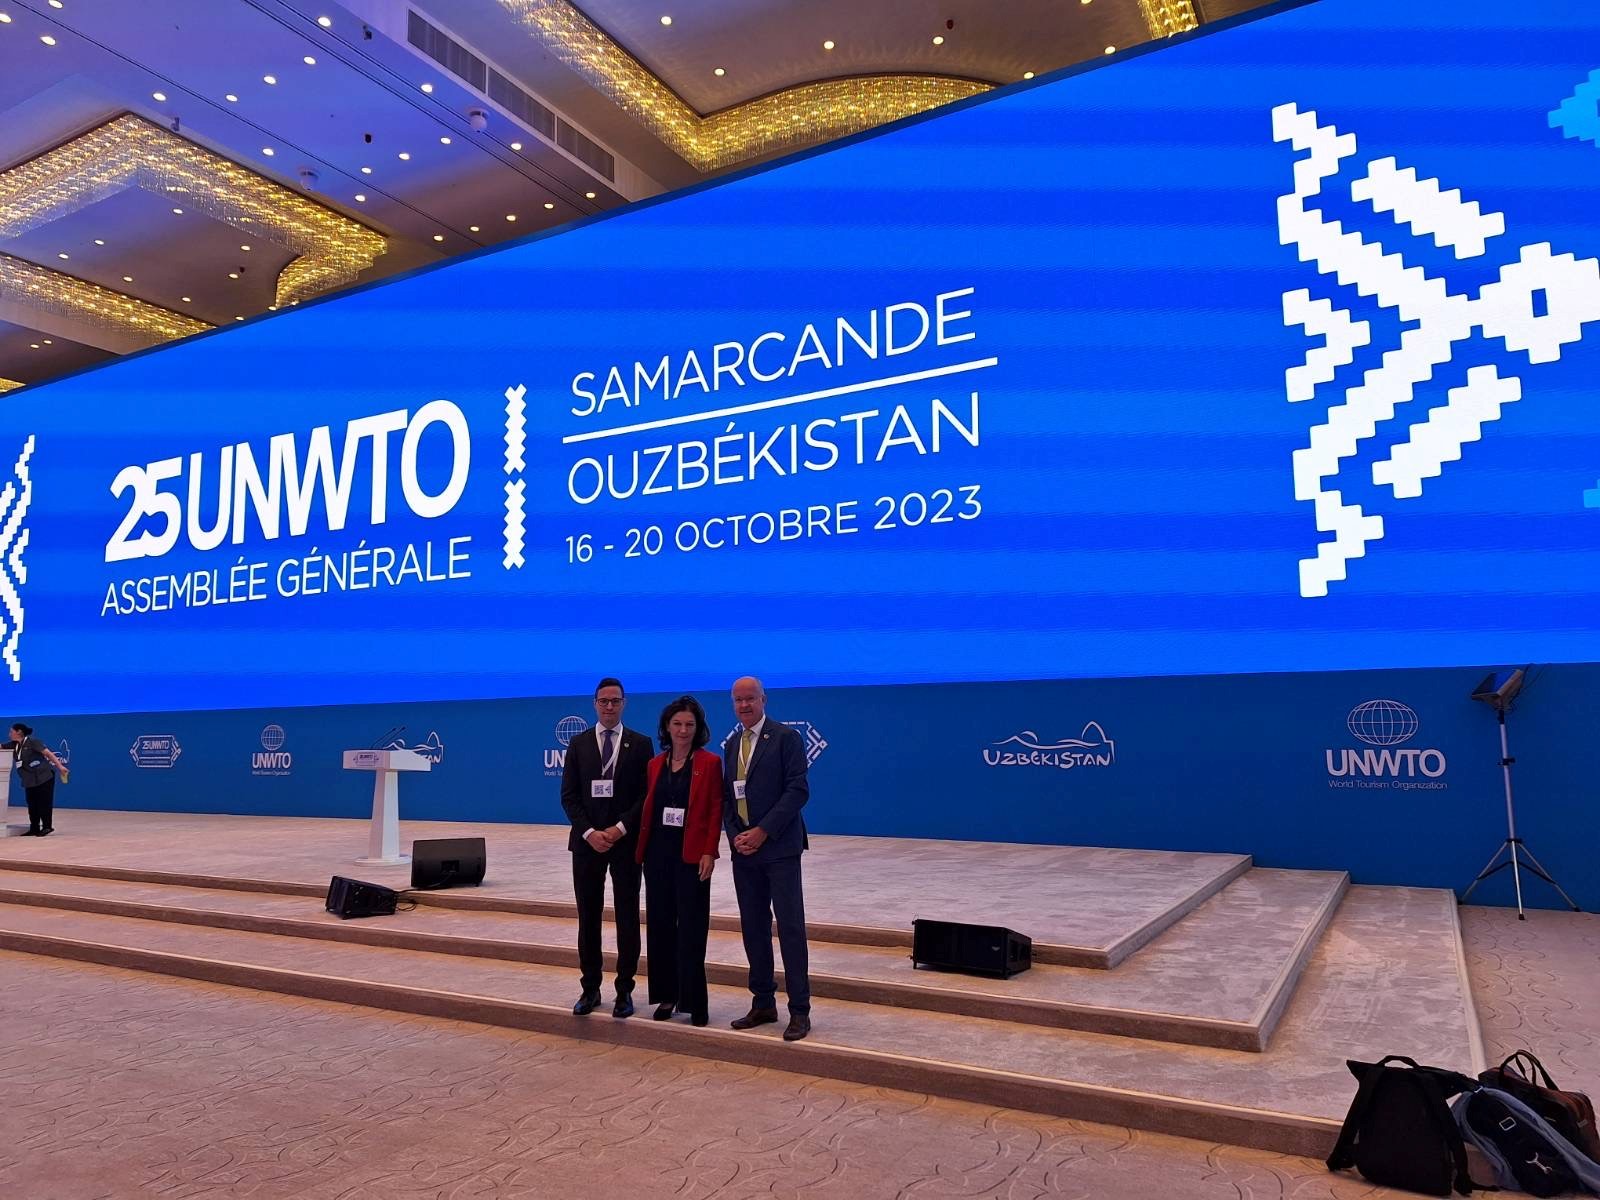 Teilnehmer bei der UNWTO Generalversammlung in Usbekistan